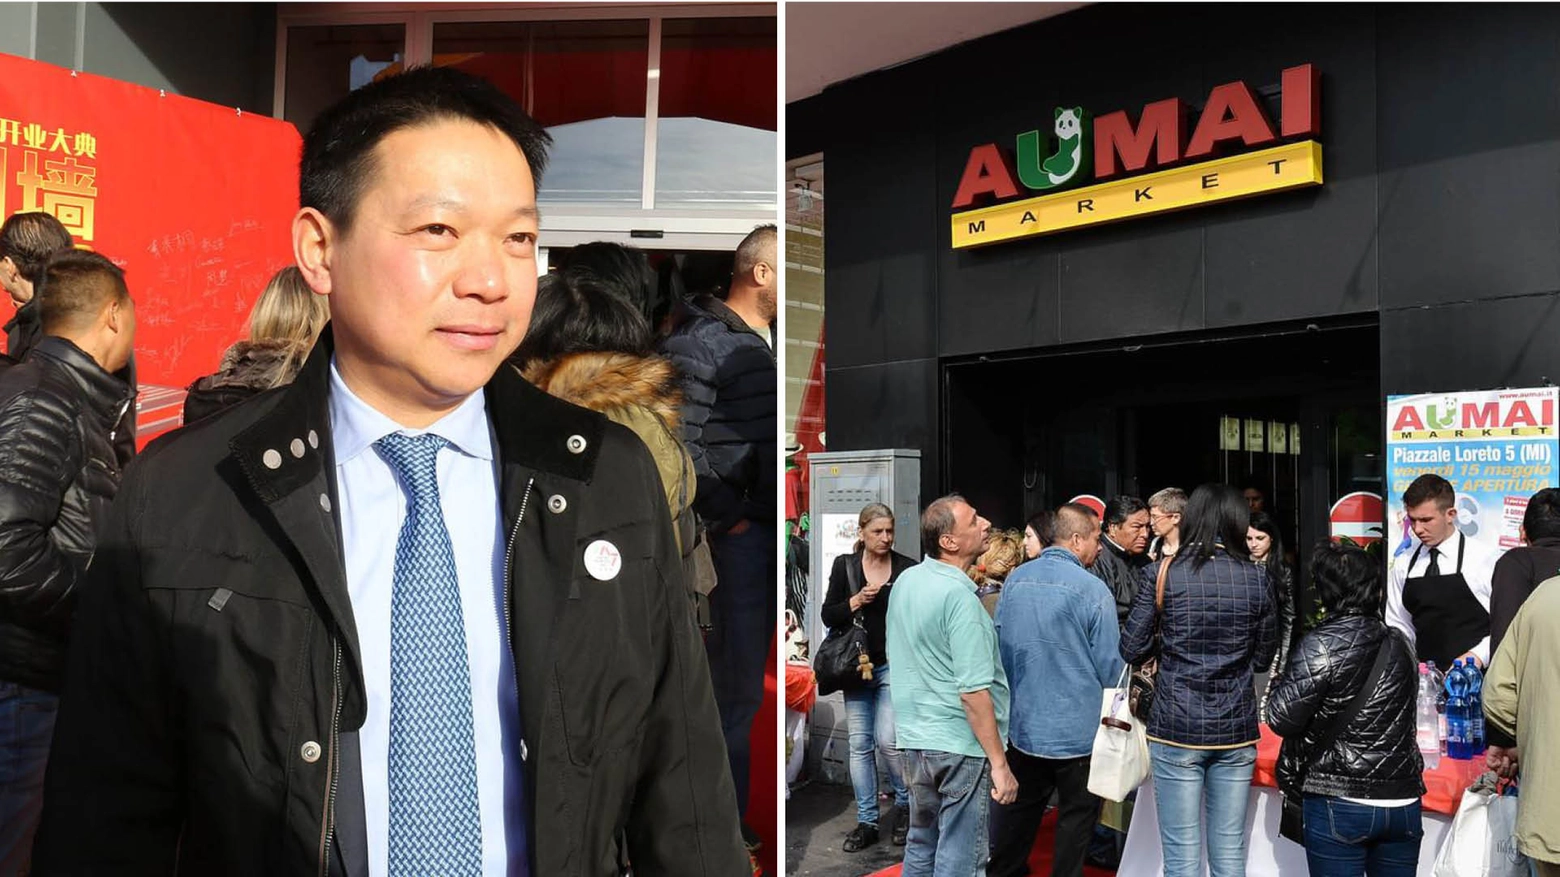 Chen Wen Xu, detto “Sandro“, proprietario di Aumai, e l'inaugurazione di uno dei suoi supermercati in zona Loreto